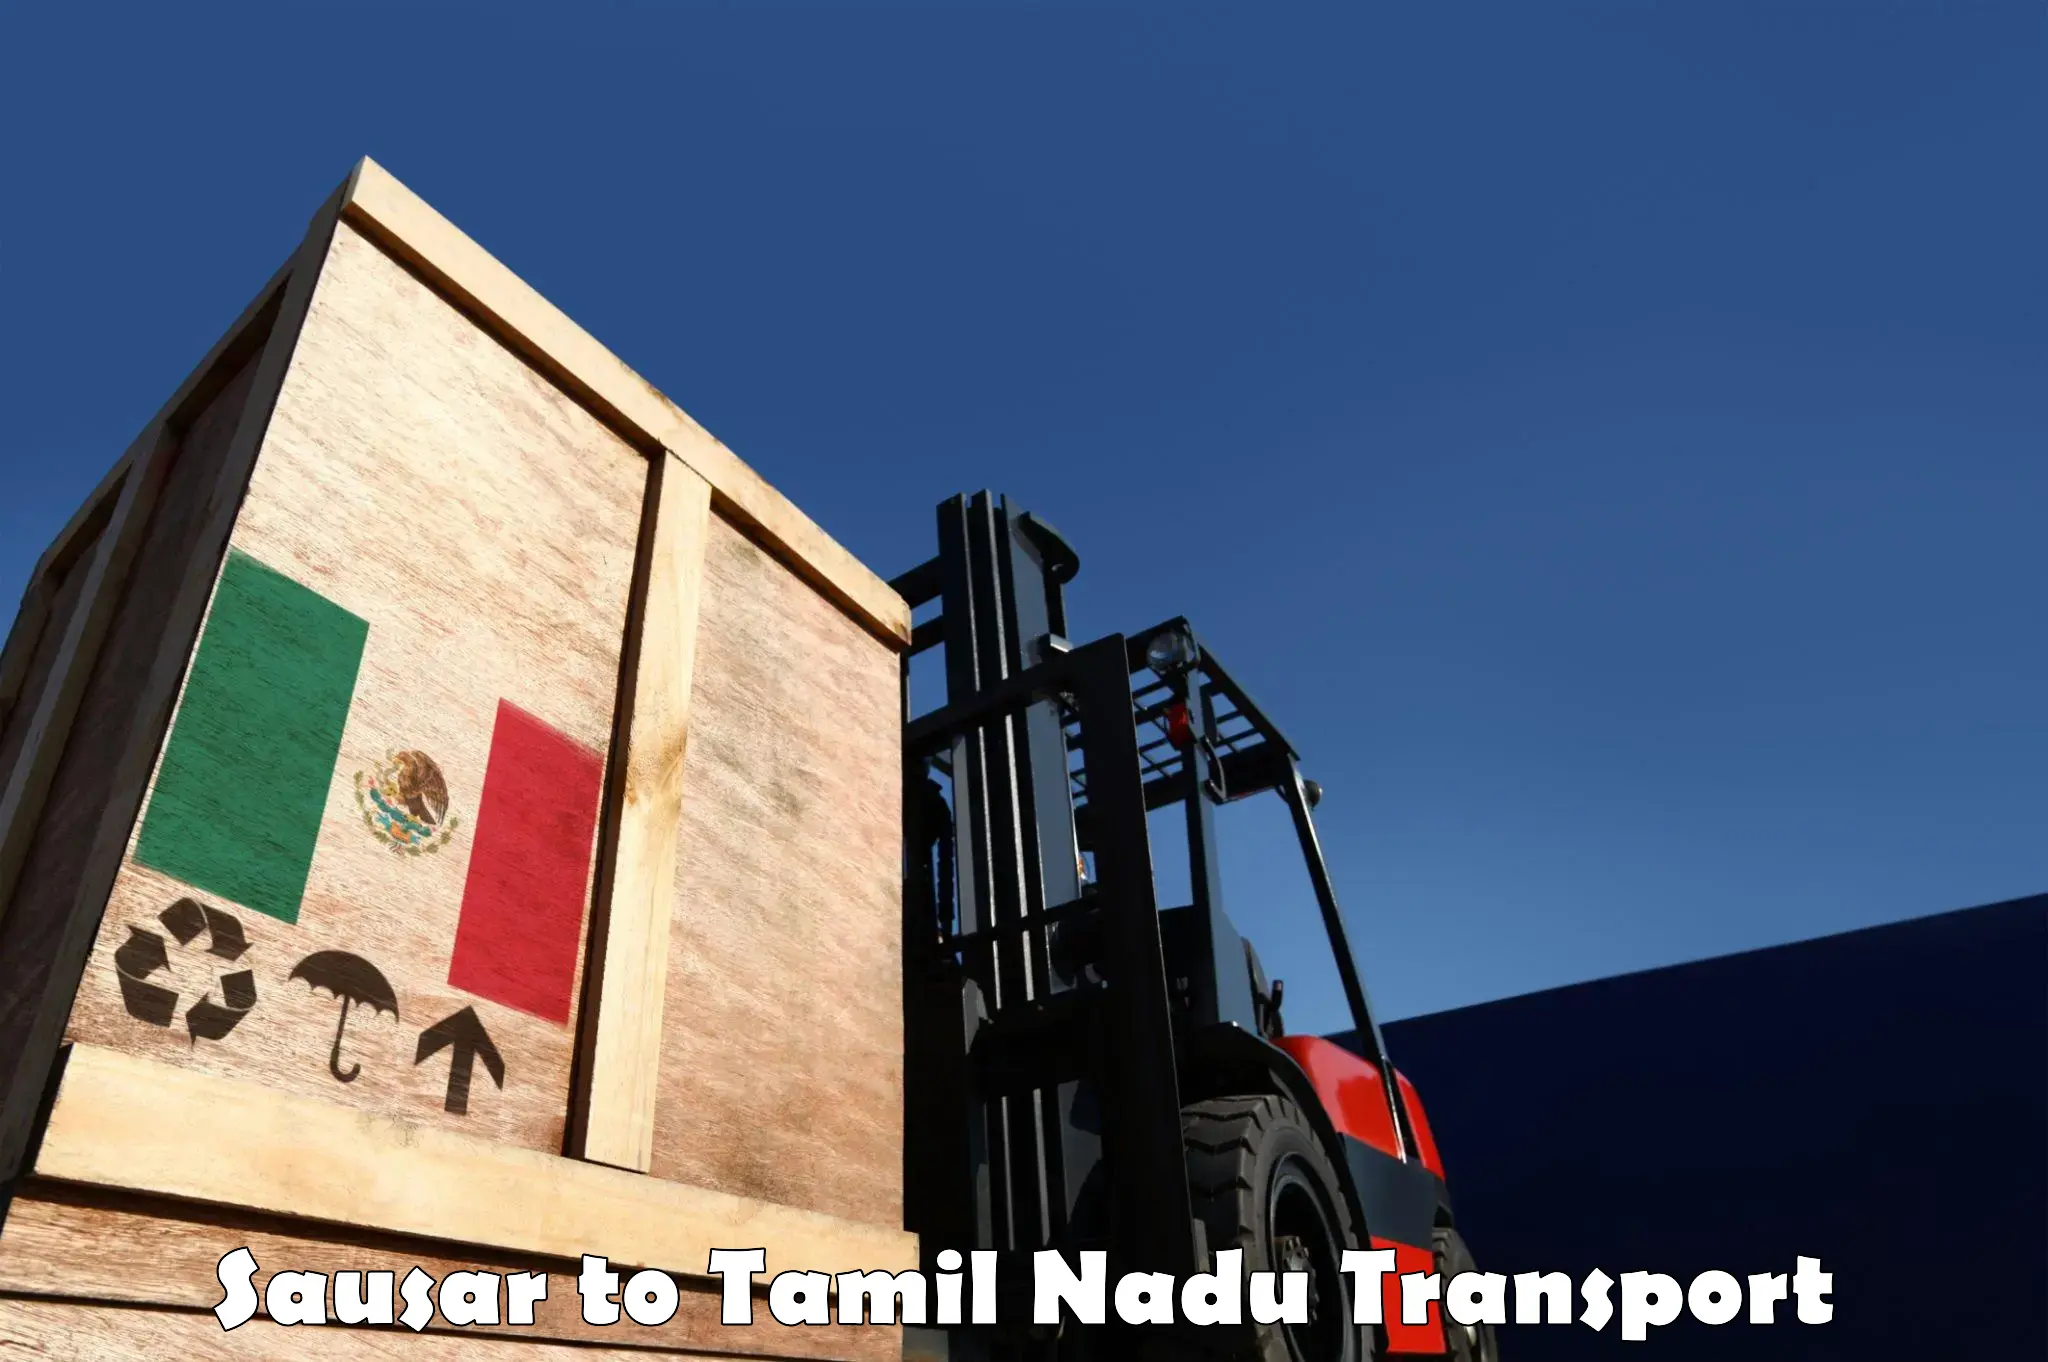 Transportation services Sausar to Paramakudi